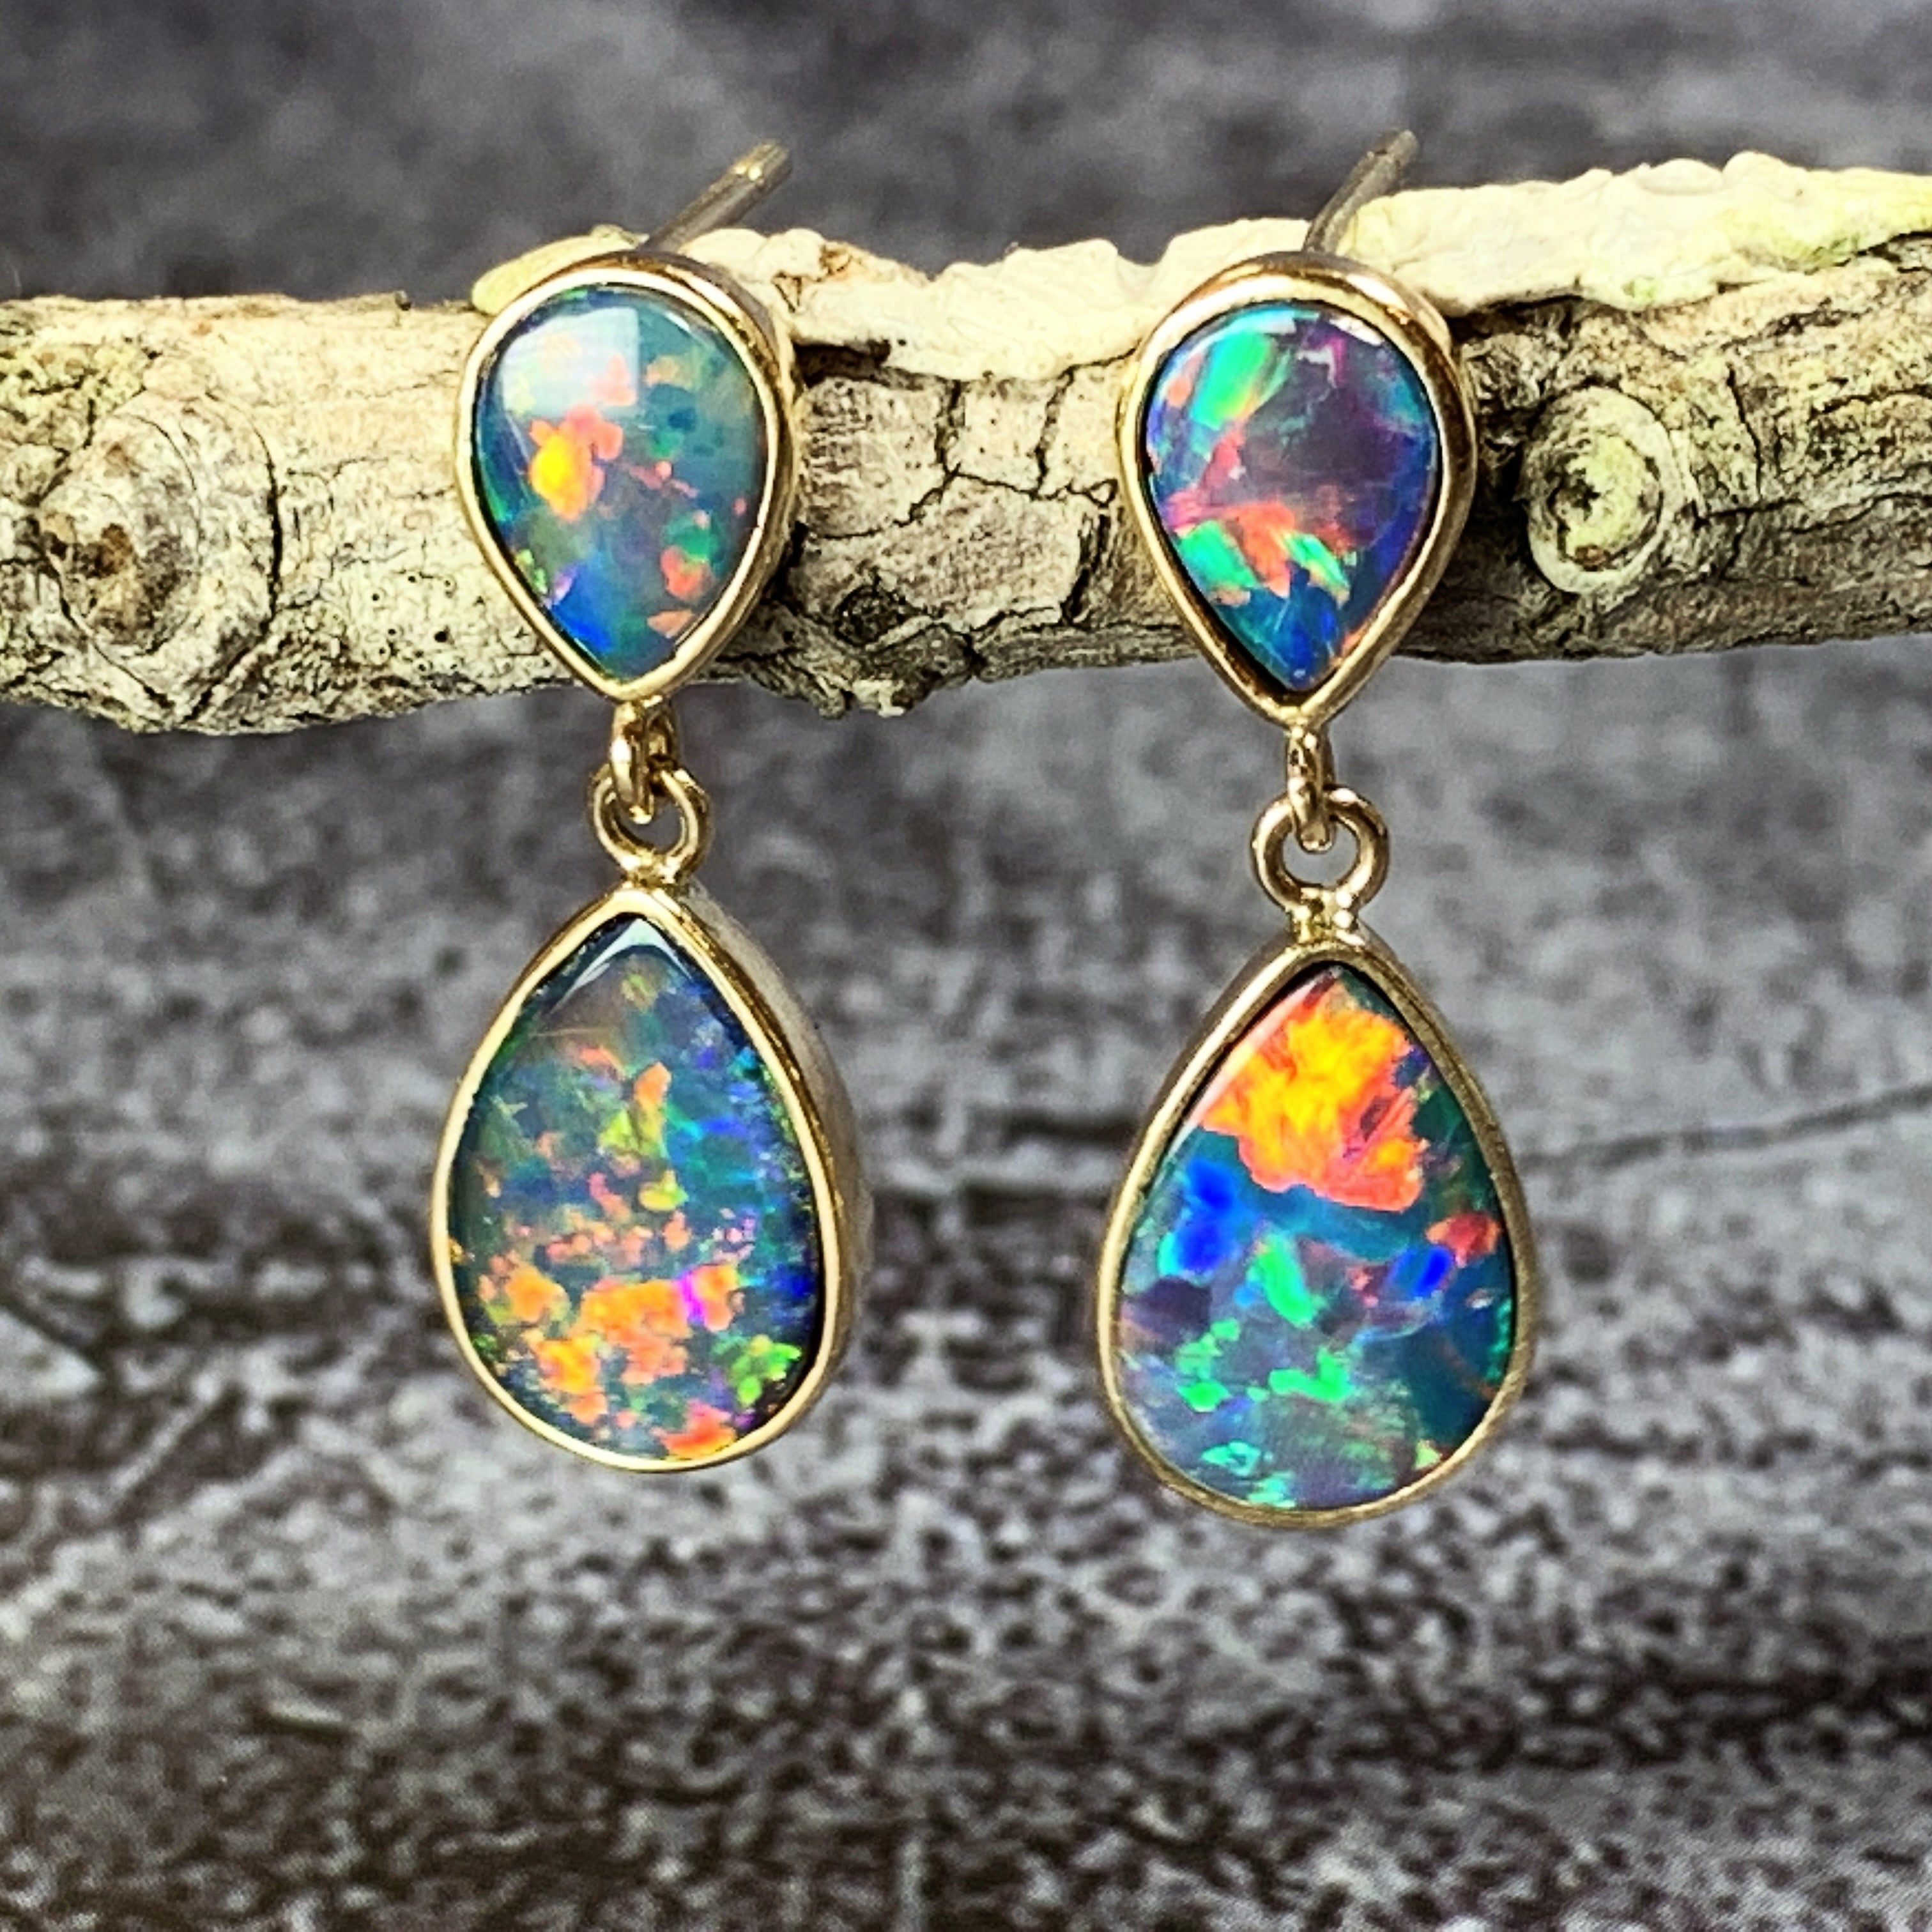 14kt Yellow Gold dangling Fire Opal doublet earrings 3.17ct - Masterpiece Jewellery Opal & Gems Sydney Australia | Online Shop